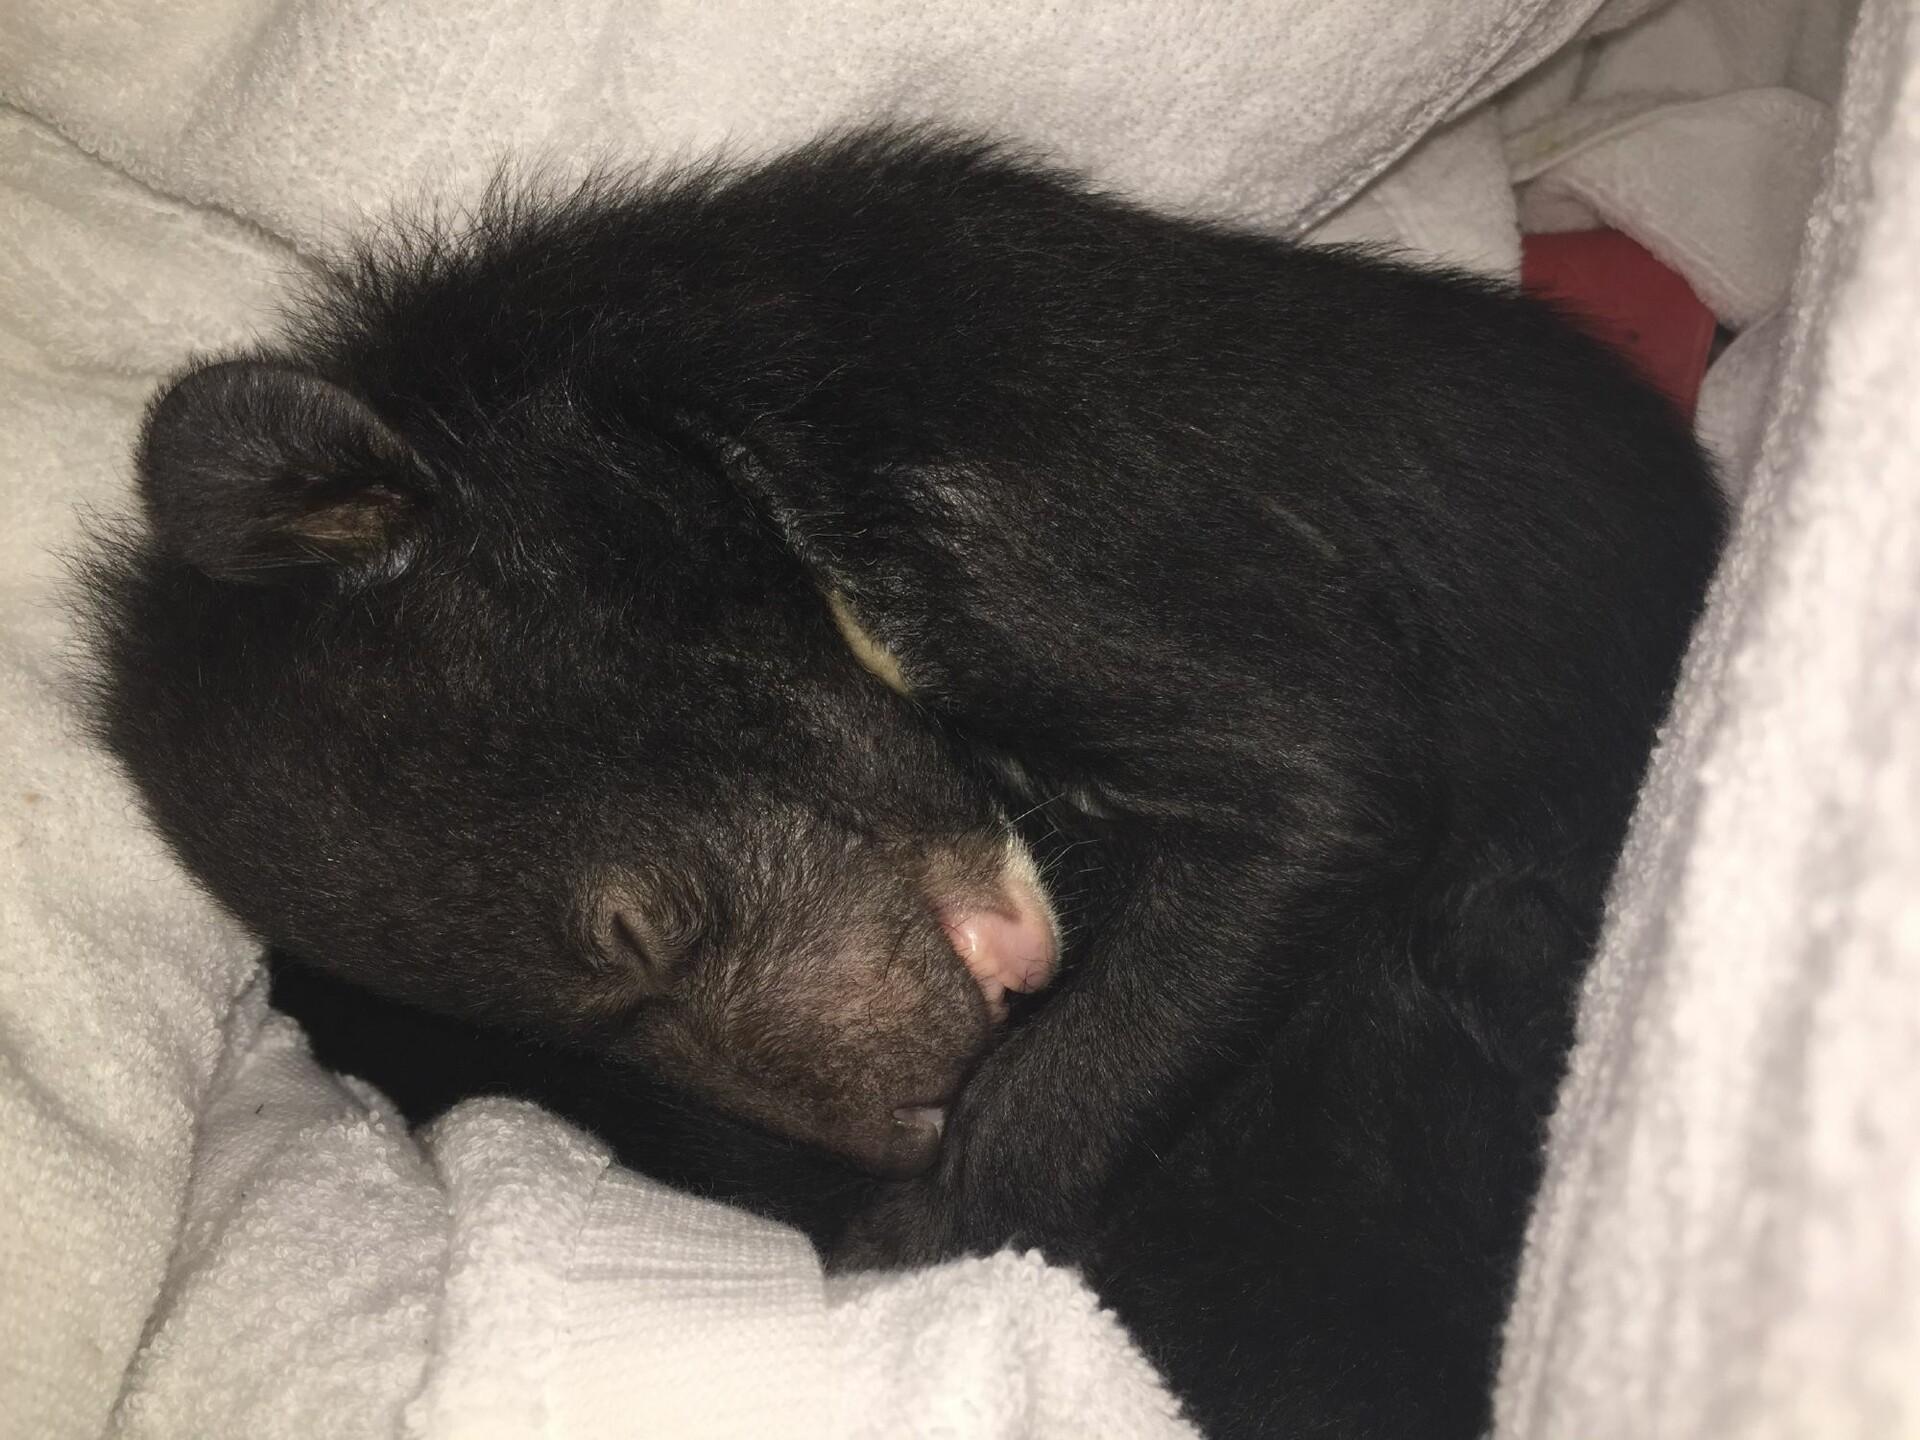 Bear cub from illegal wildlife trade in Vietnam